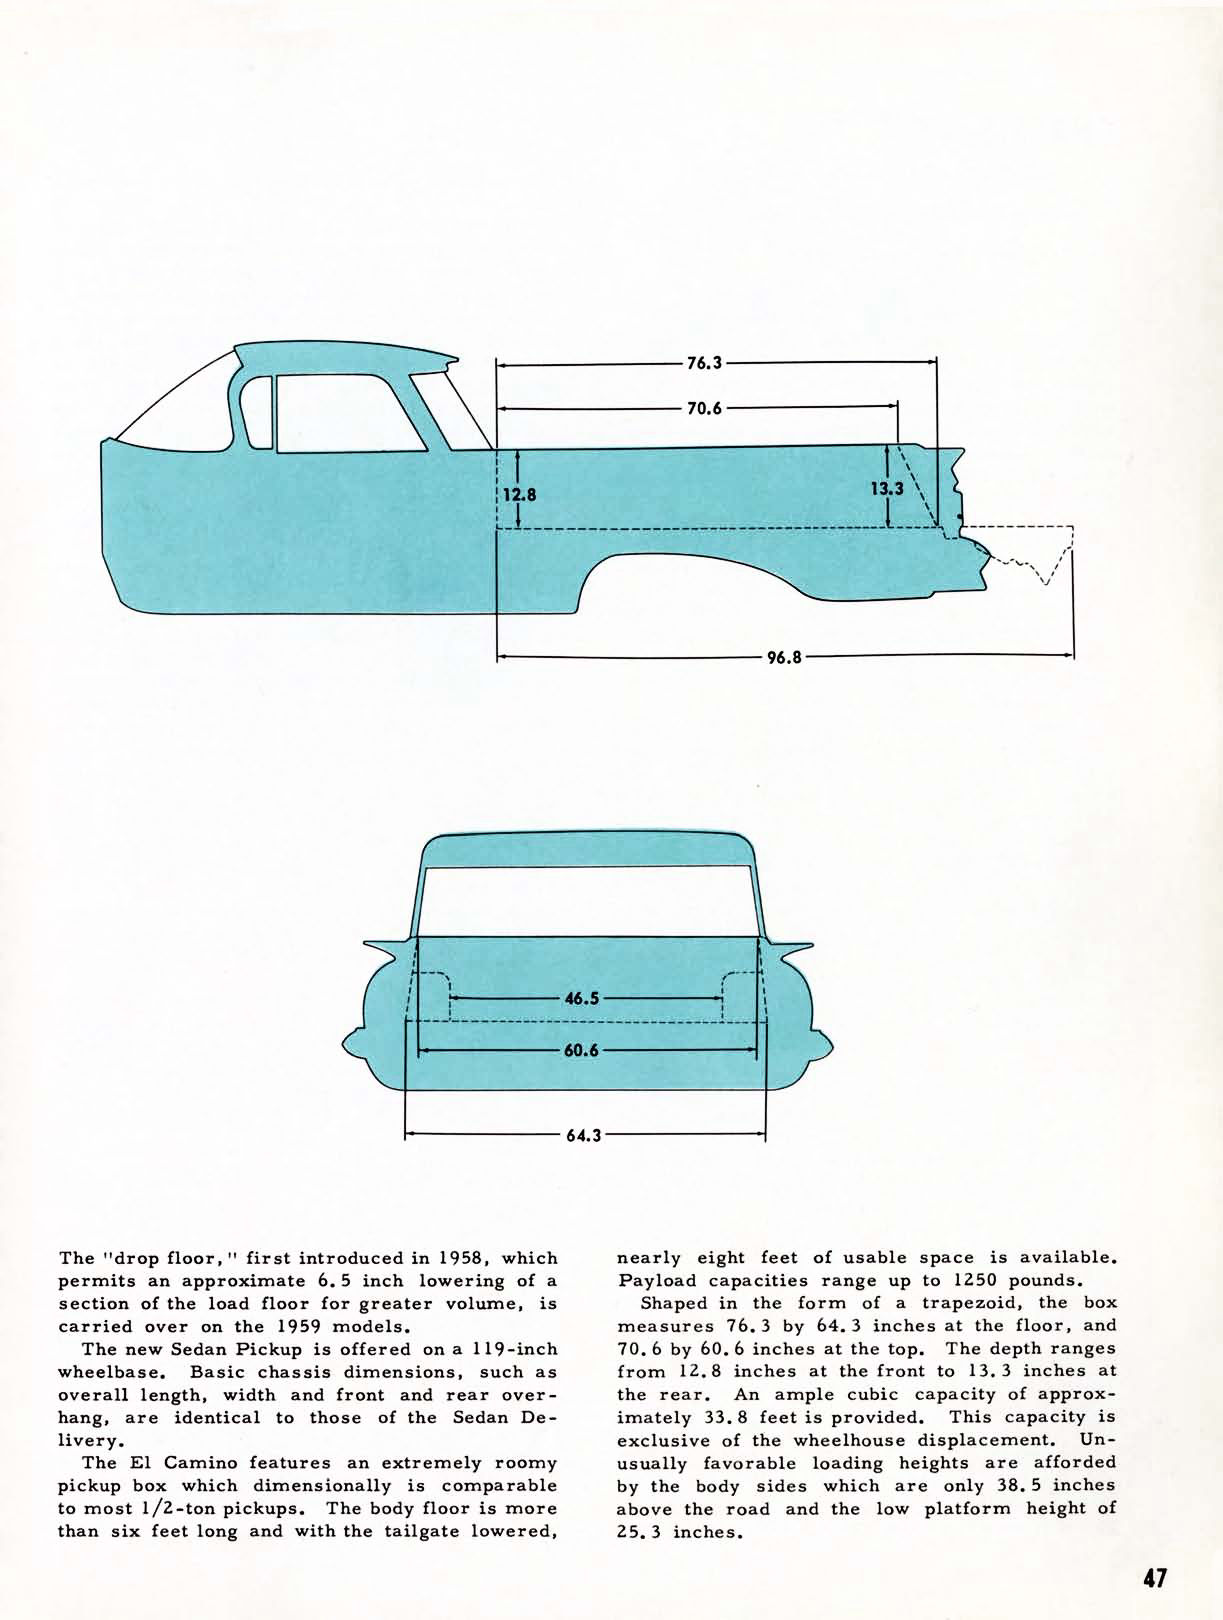 1959 Chevrolet Truck Engineering Features-47